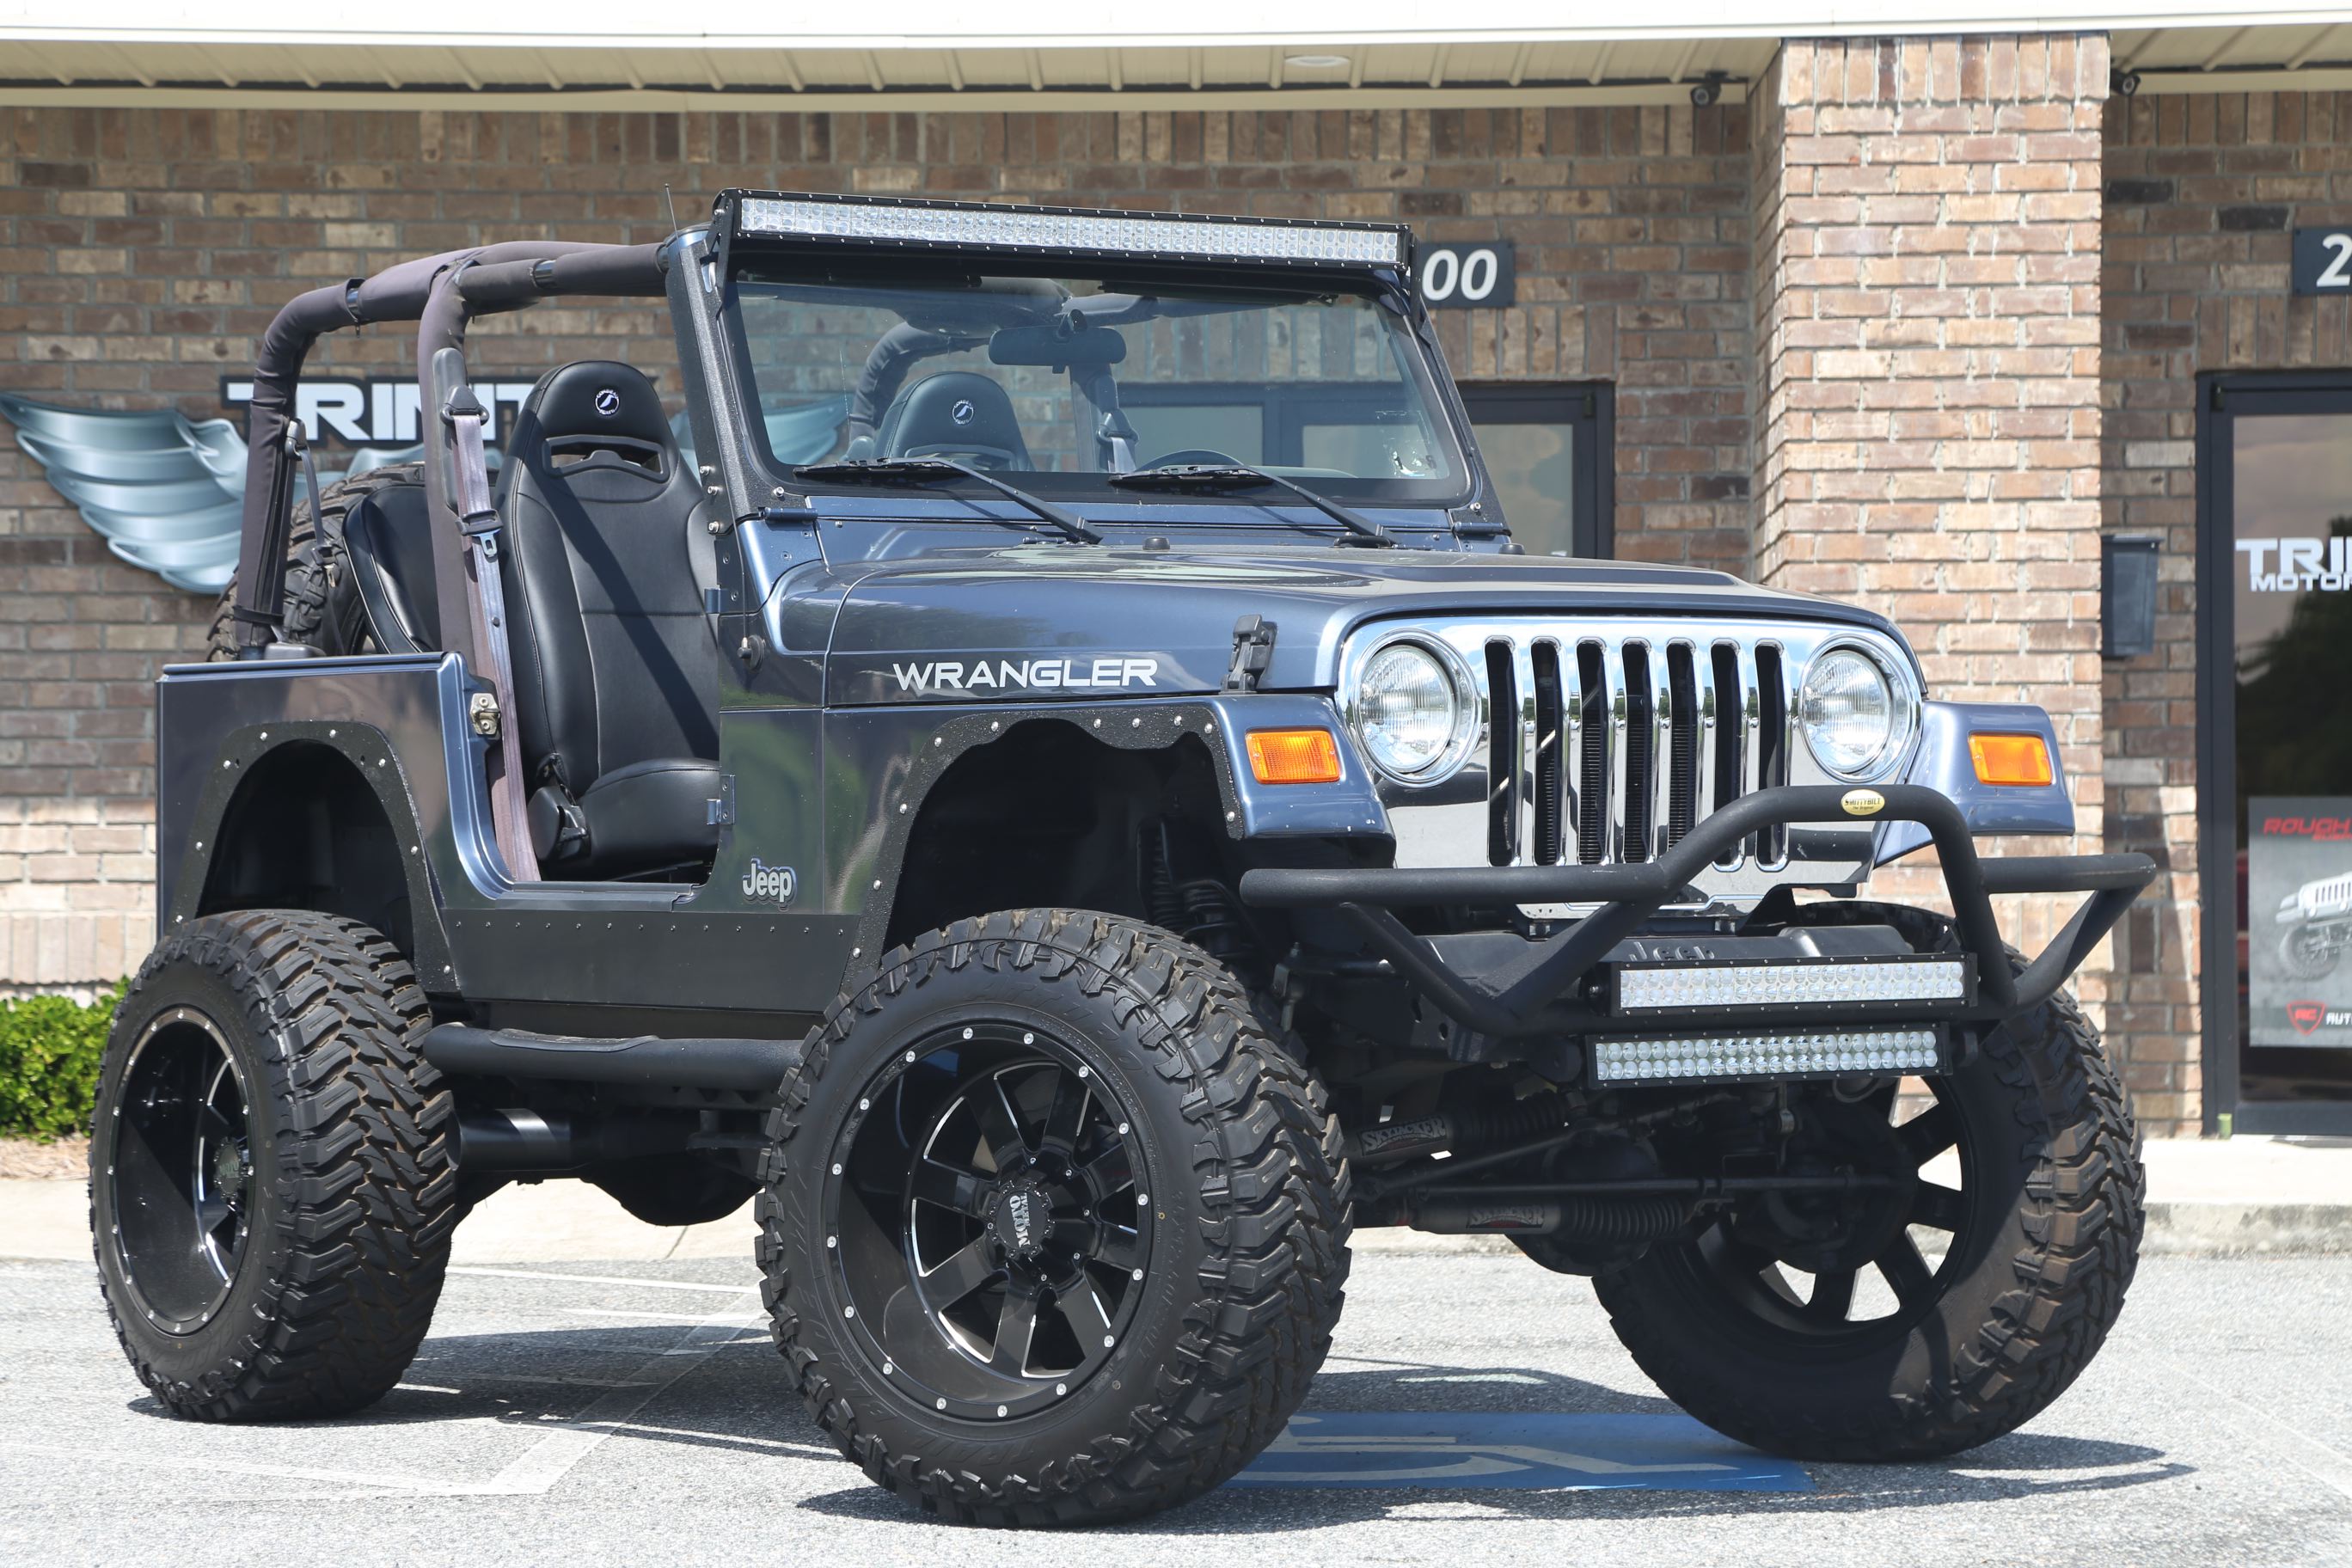 LS swapped Jeep TJ - Trinity Motorsports